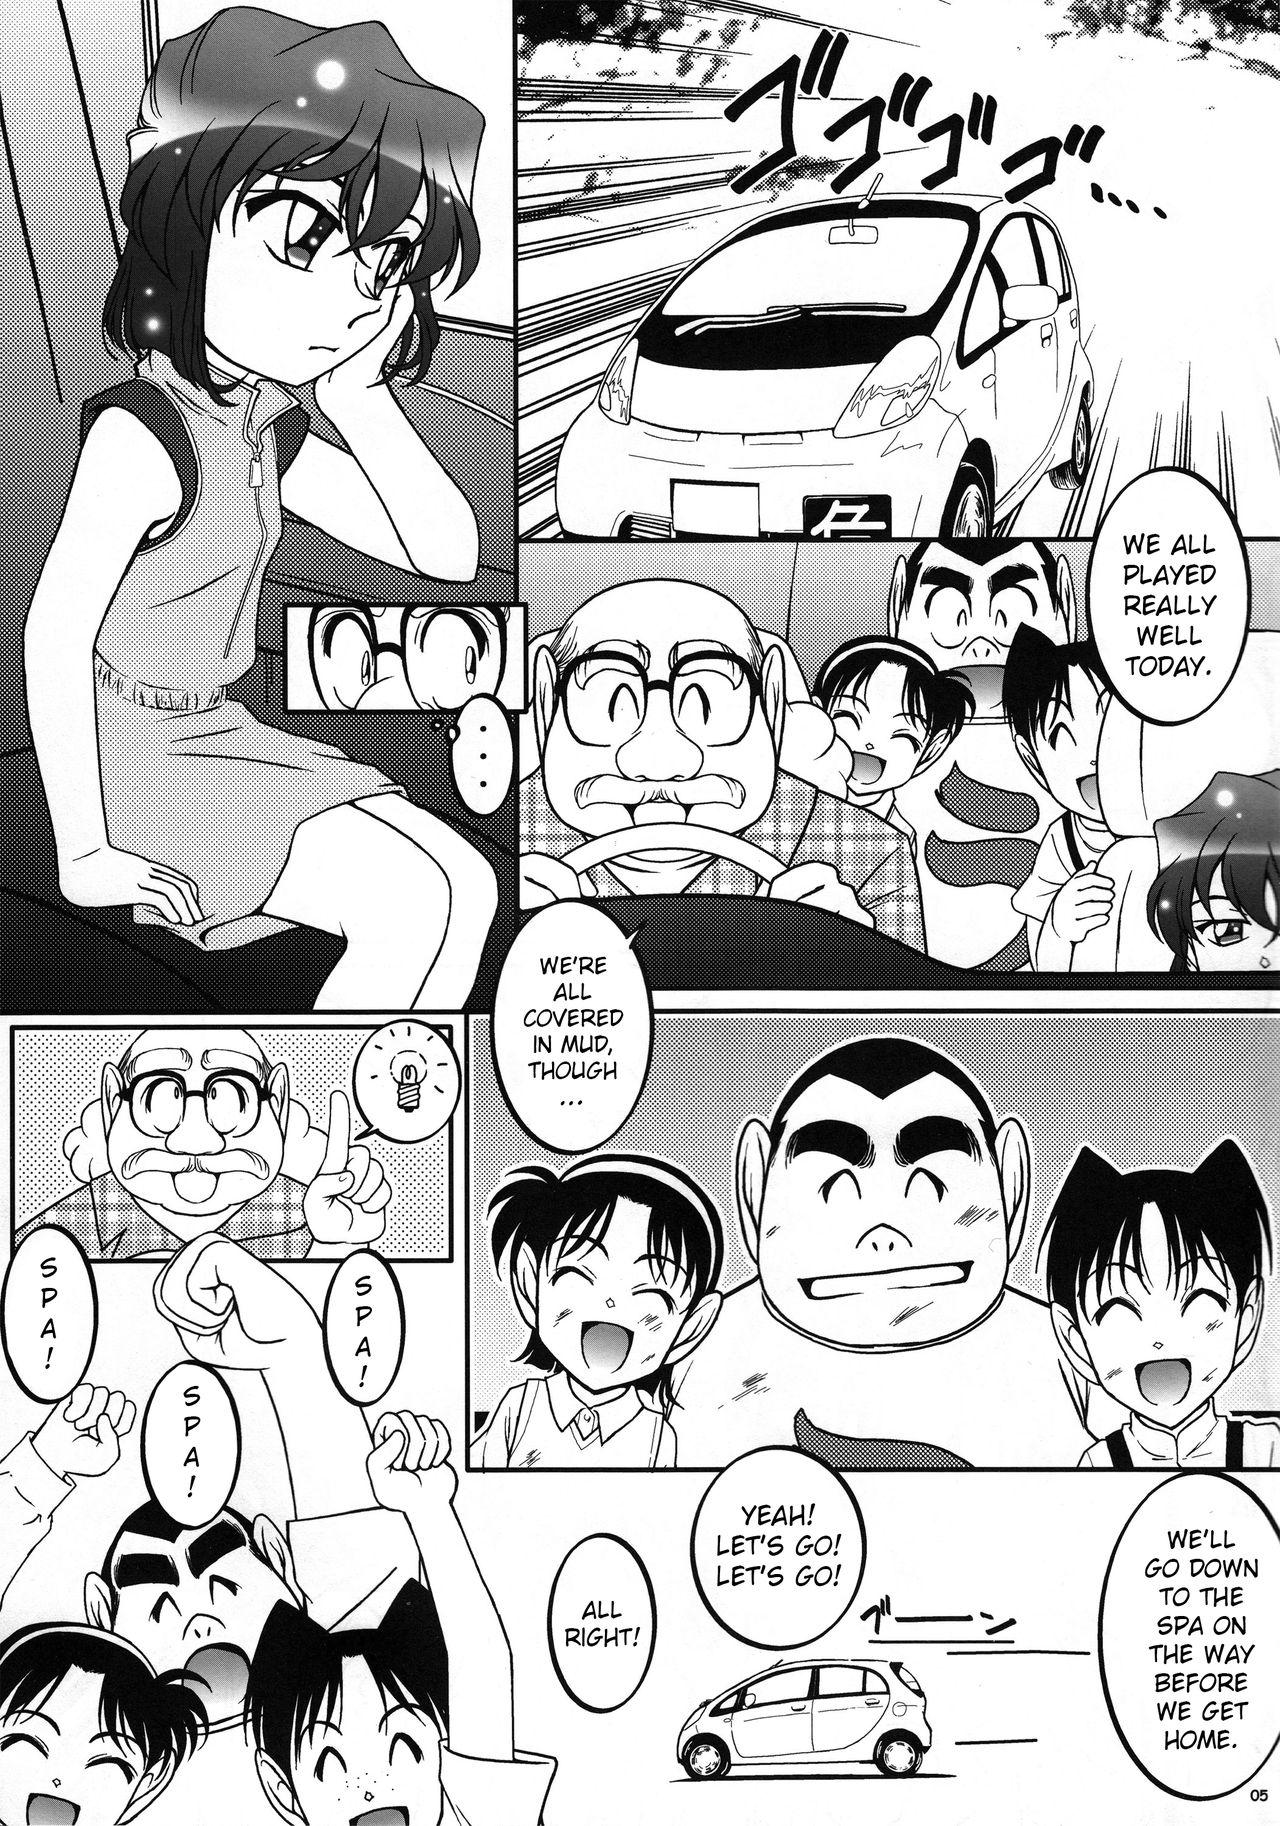 Bukkake Otoko yu de Dokkiri! EP0 - Detective conan Caught - Page 4